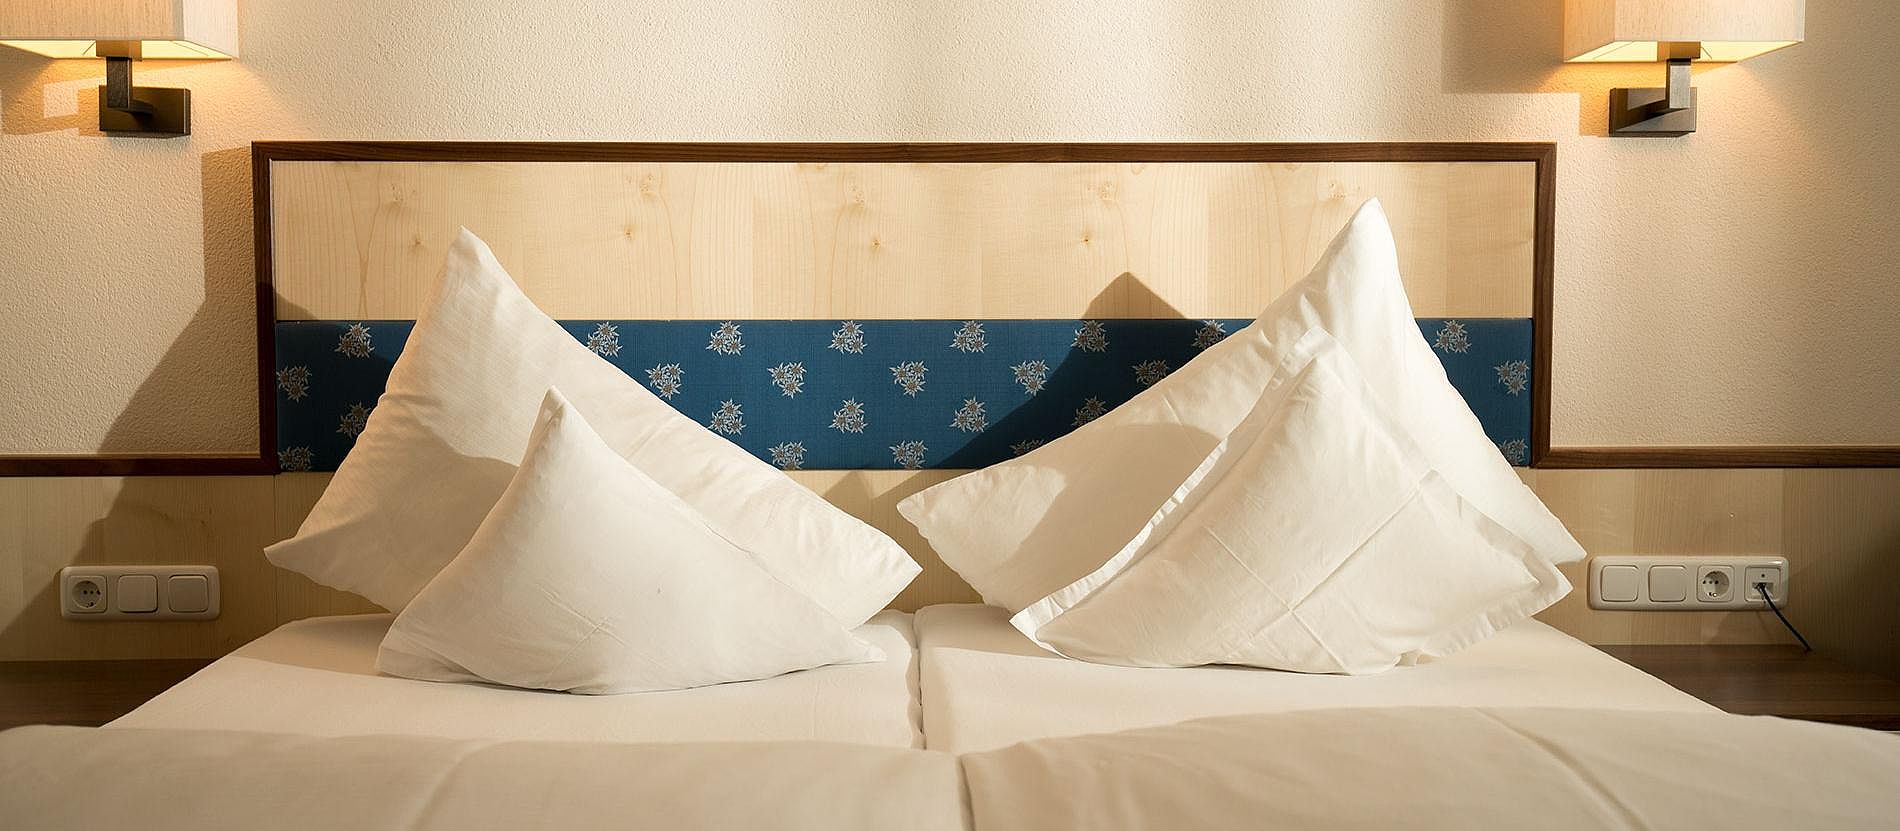 Hotel Längenfeld - Foto eines Bettes - Kopfkissen aufgestellt